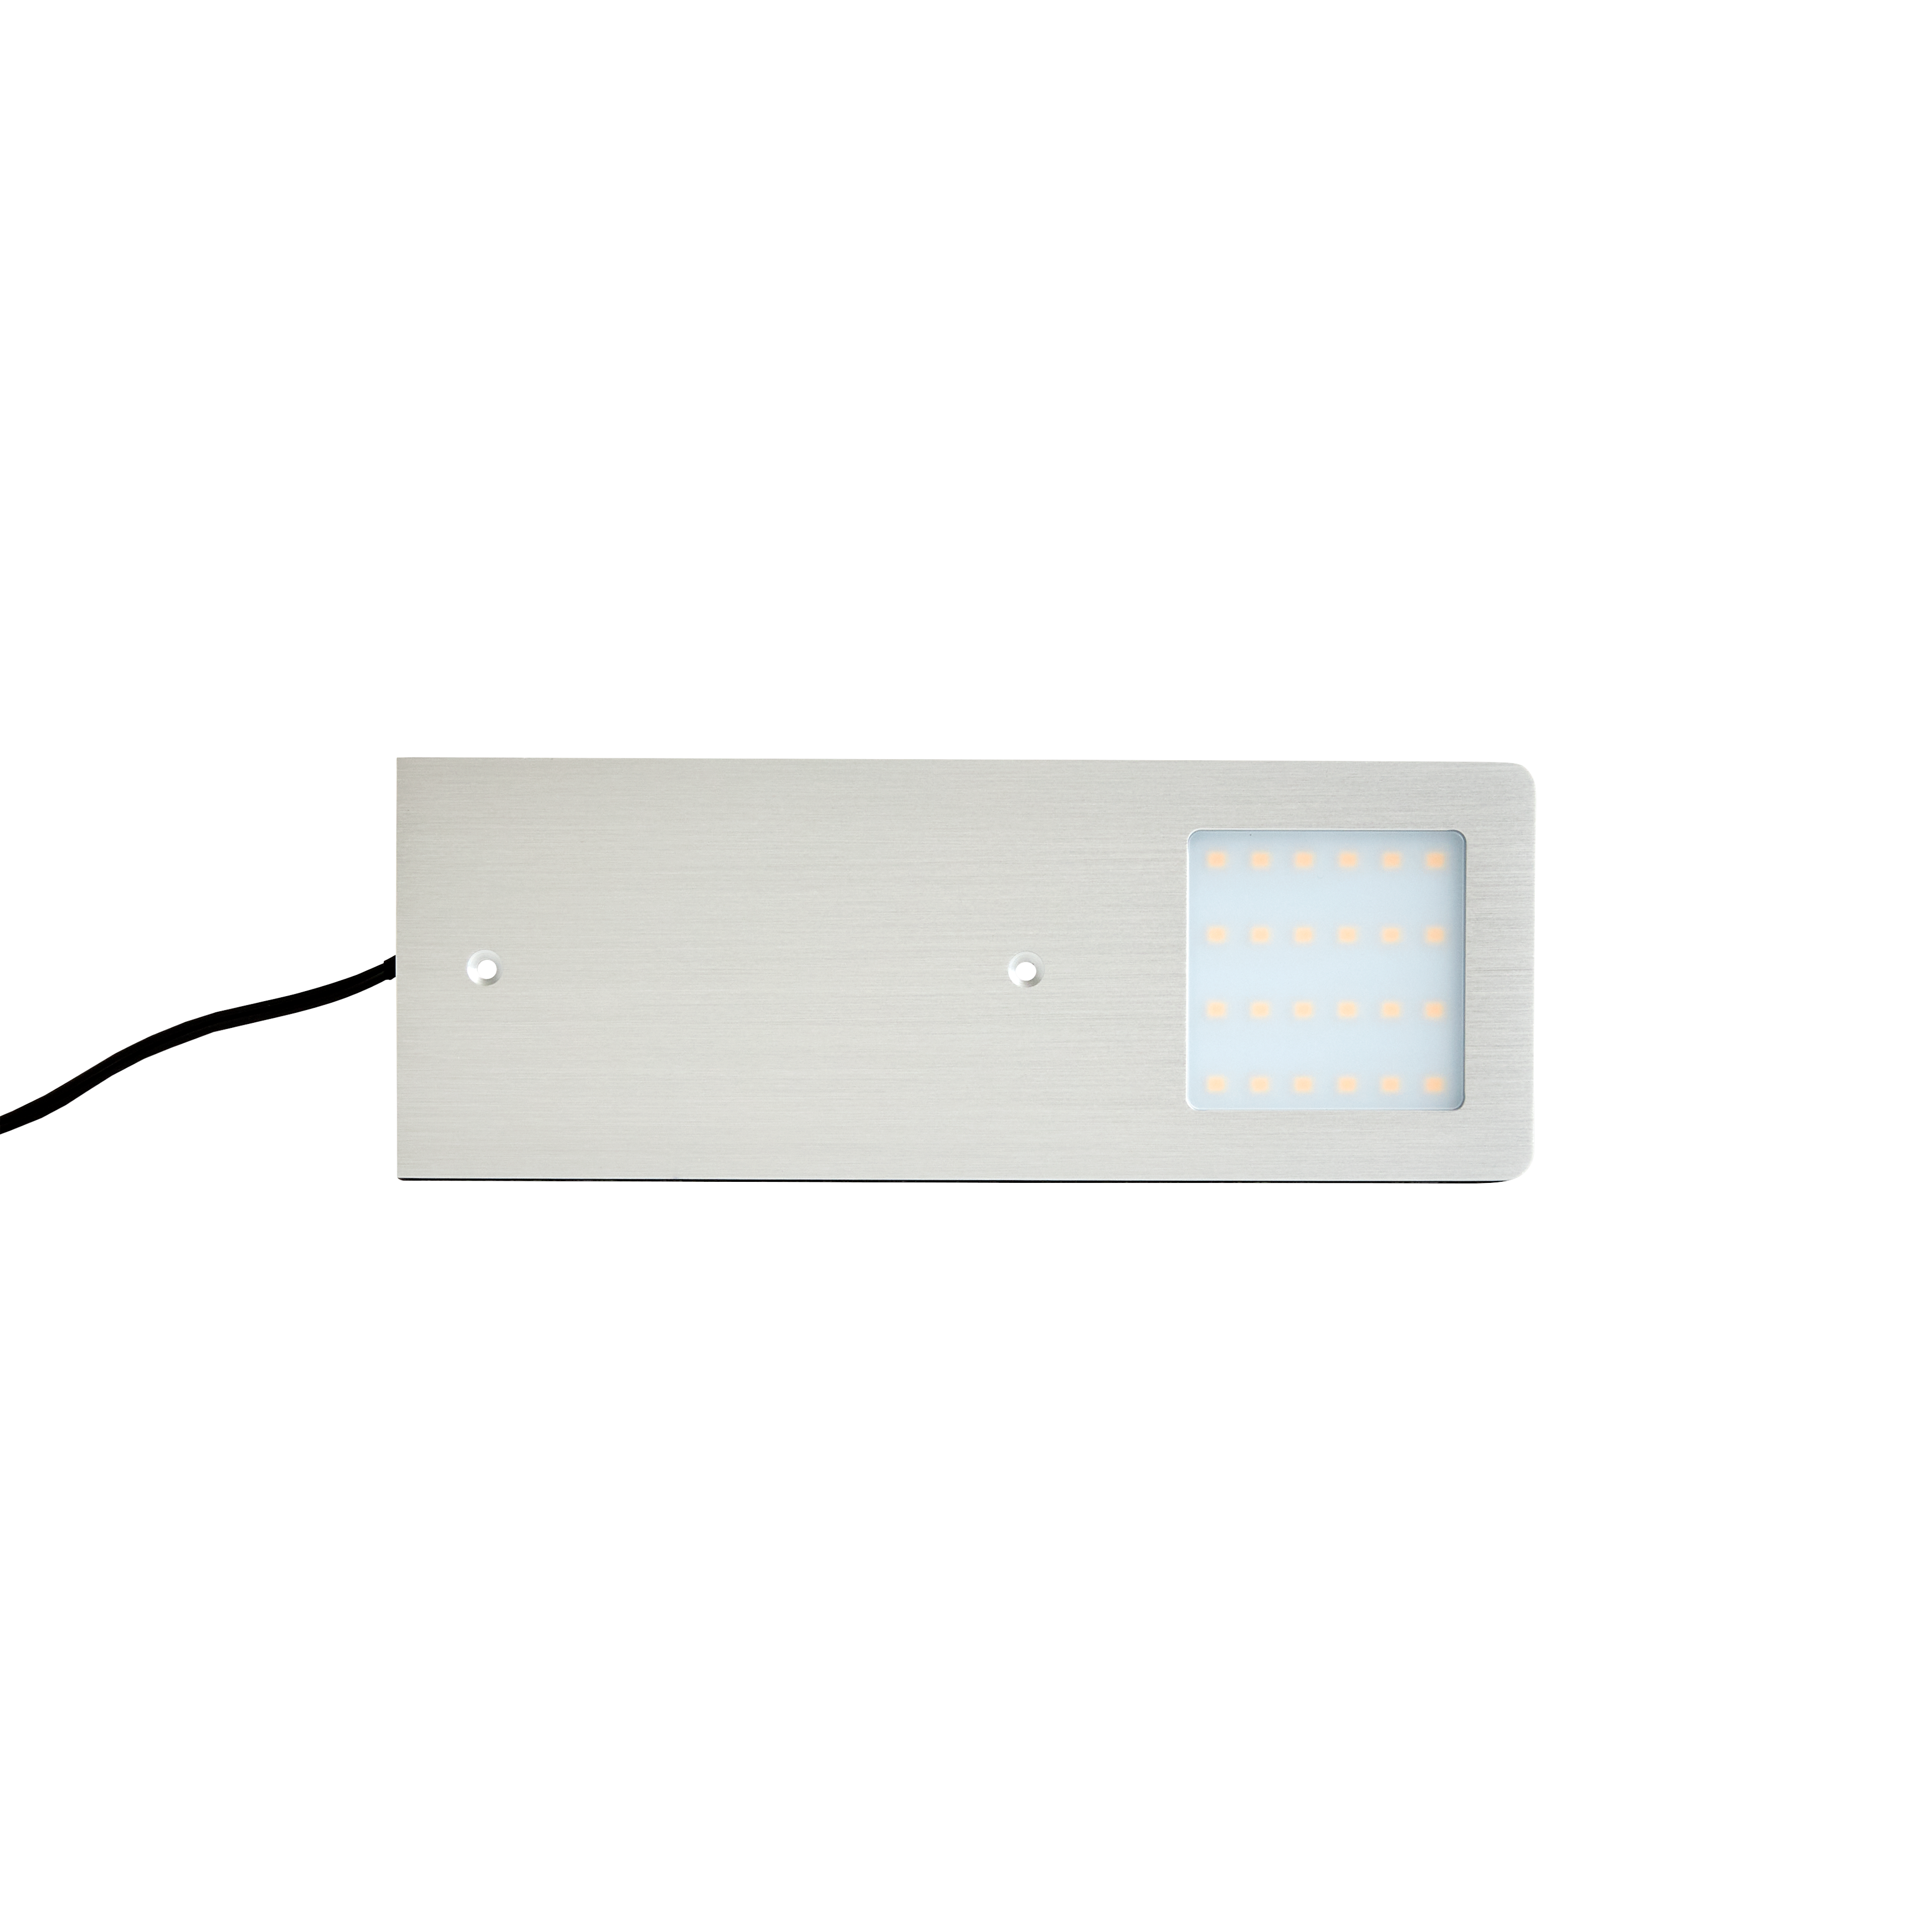 LED Spot flach Warmwhite 12V/5,3W Aluminium